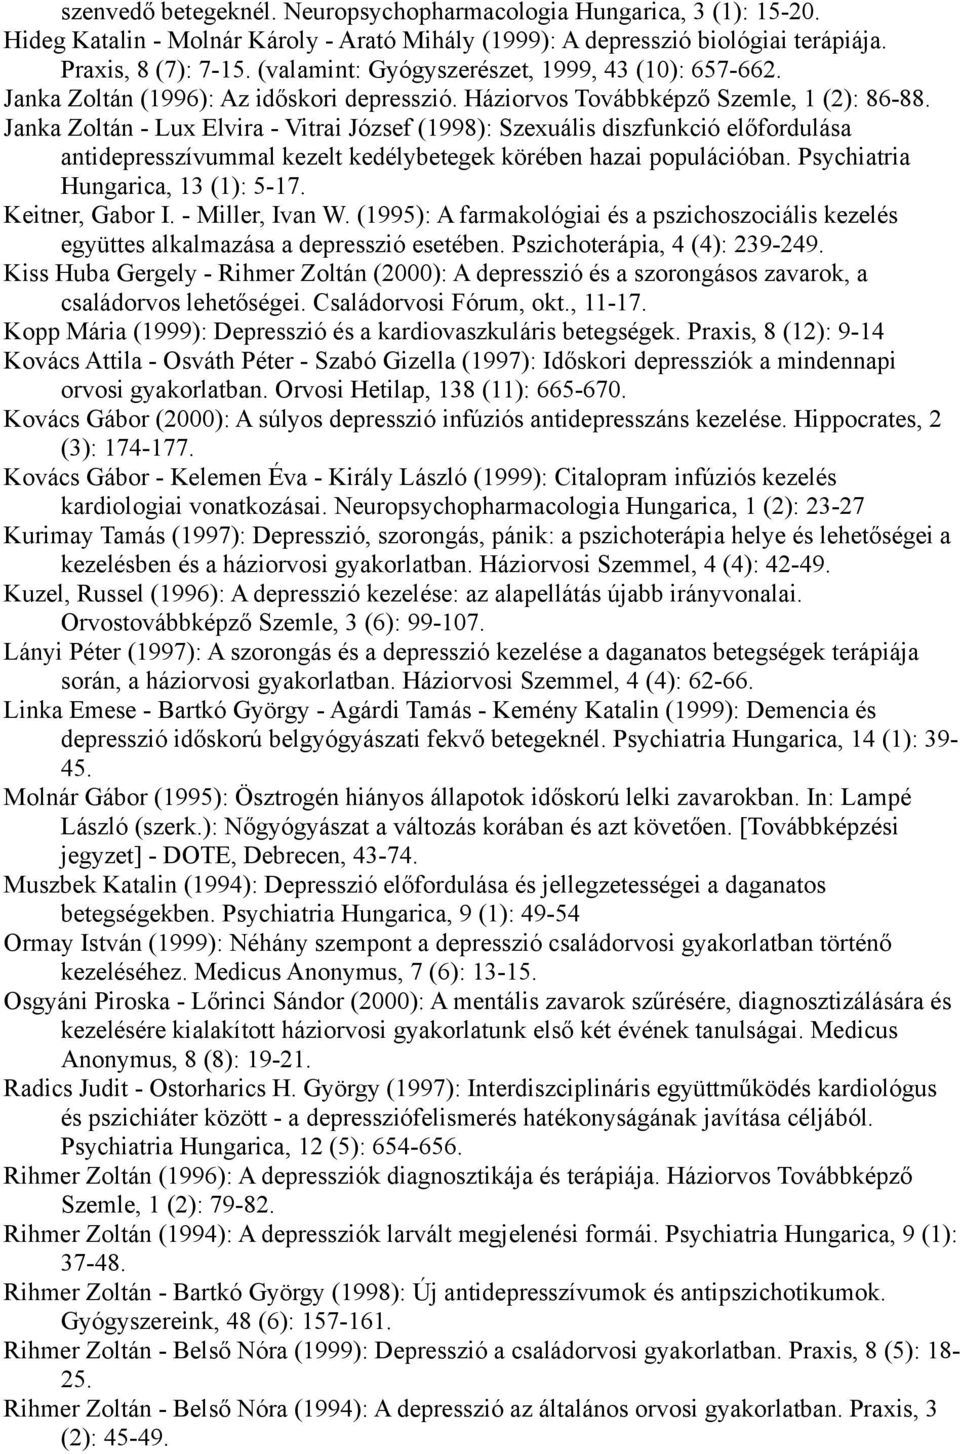 Janka Zoltán - Lux Elvira - Vitrai József (1998): Szexuális diszfunkció előfordulása antidepresszívummal kezelt kedélybetegek körében hazai populációban. Psychiatria Hungarica, 13 (1): 5-17.